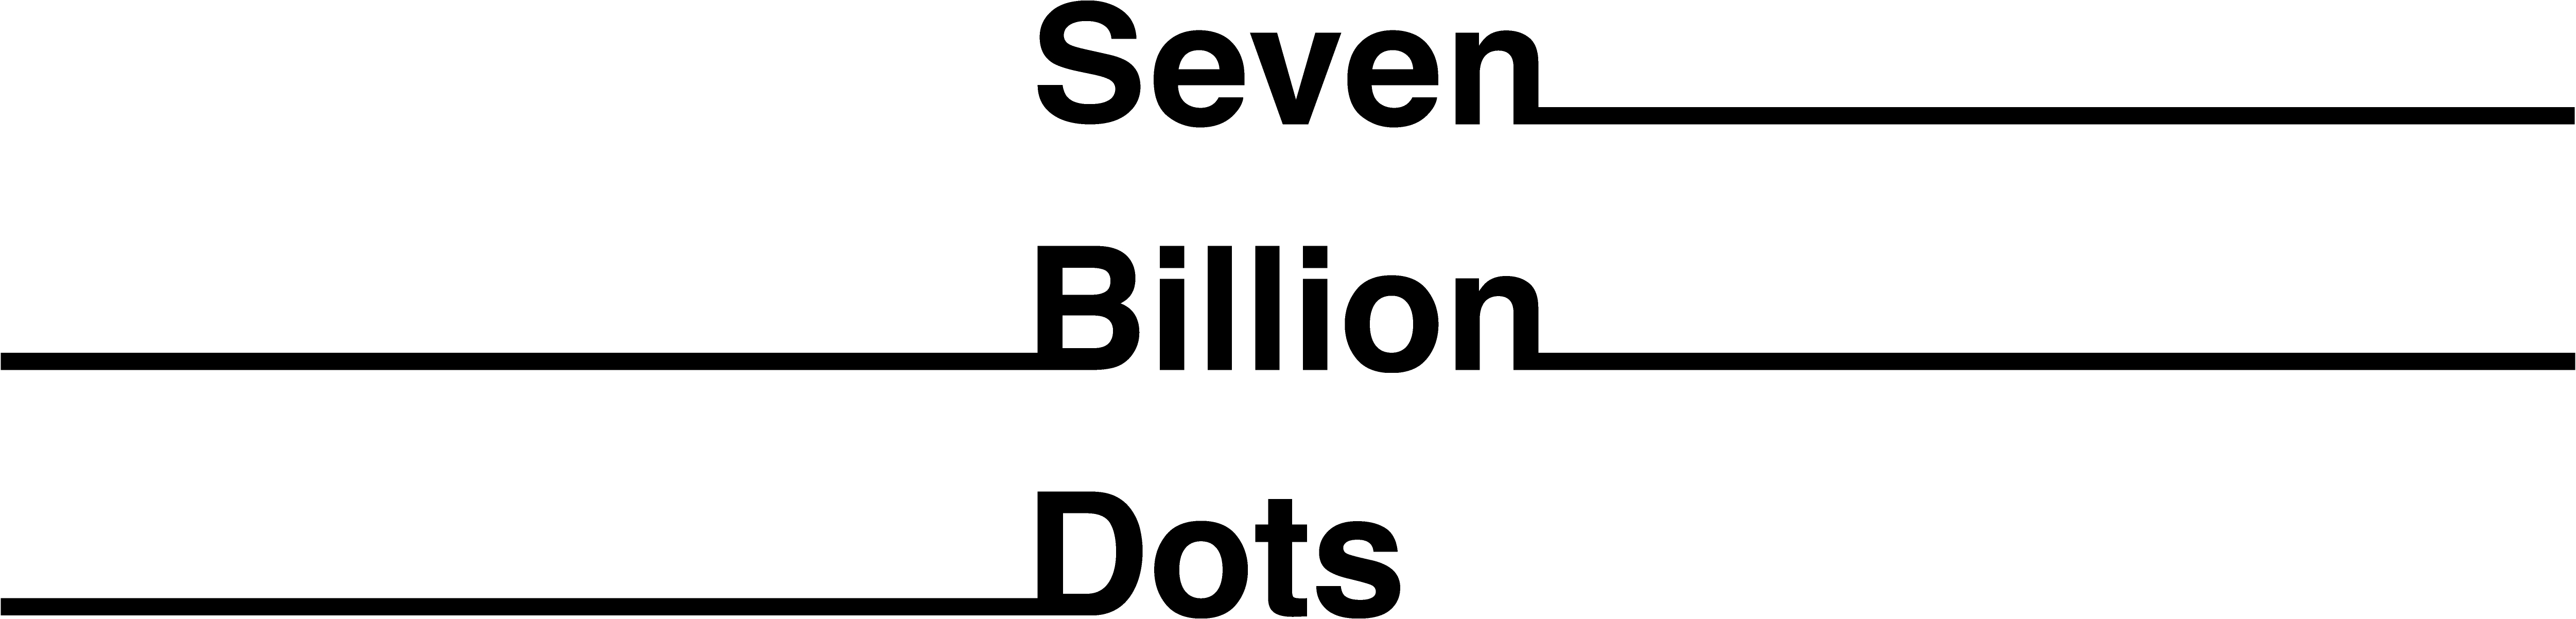 Seven Billion Dots